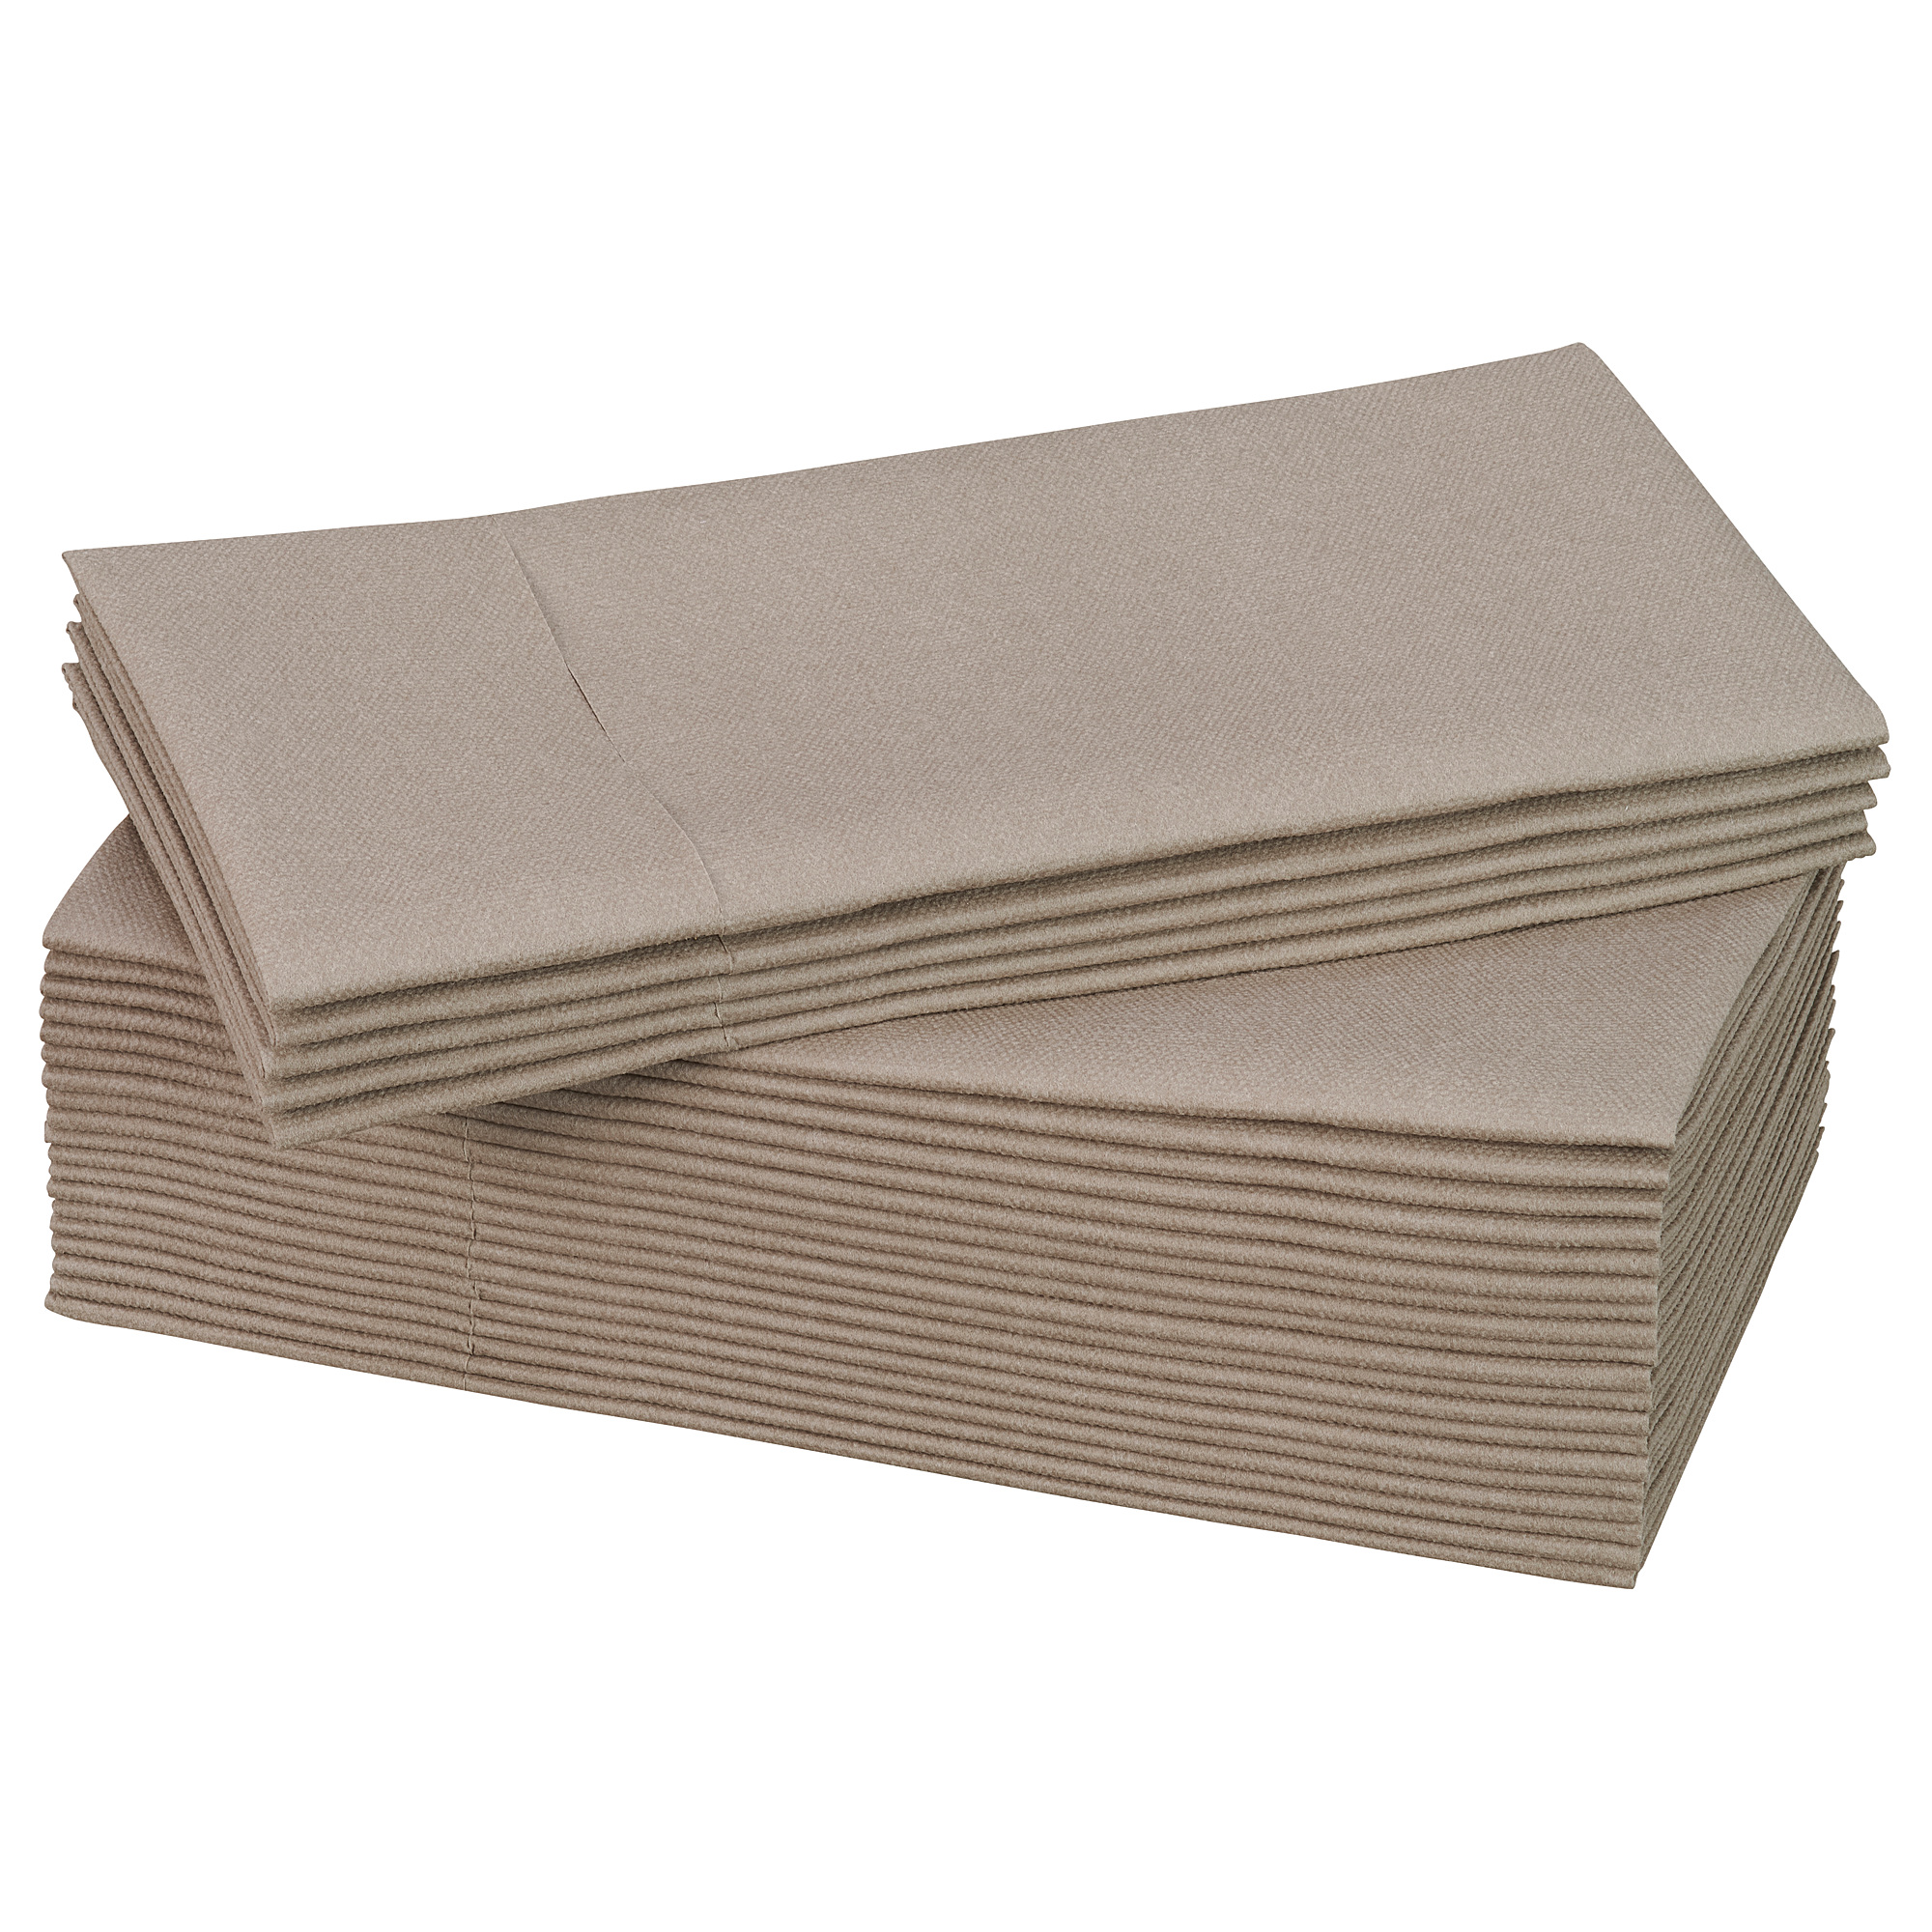 MOTTAGA paper napkin